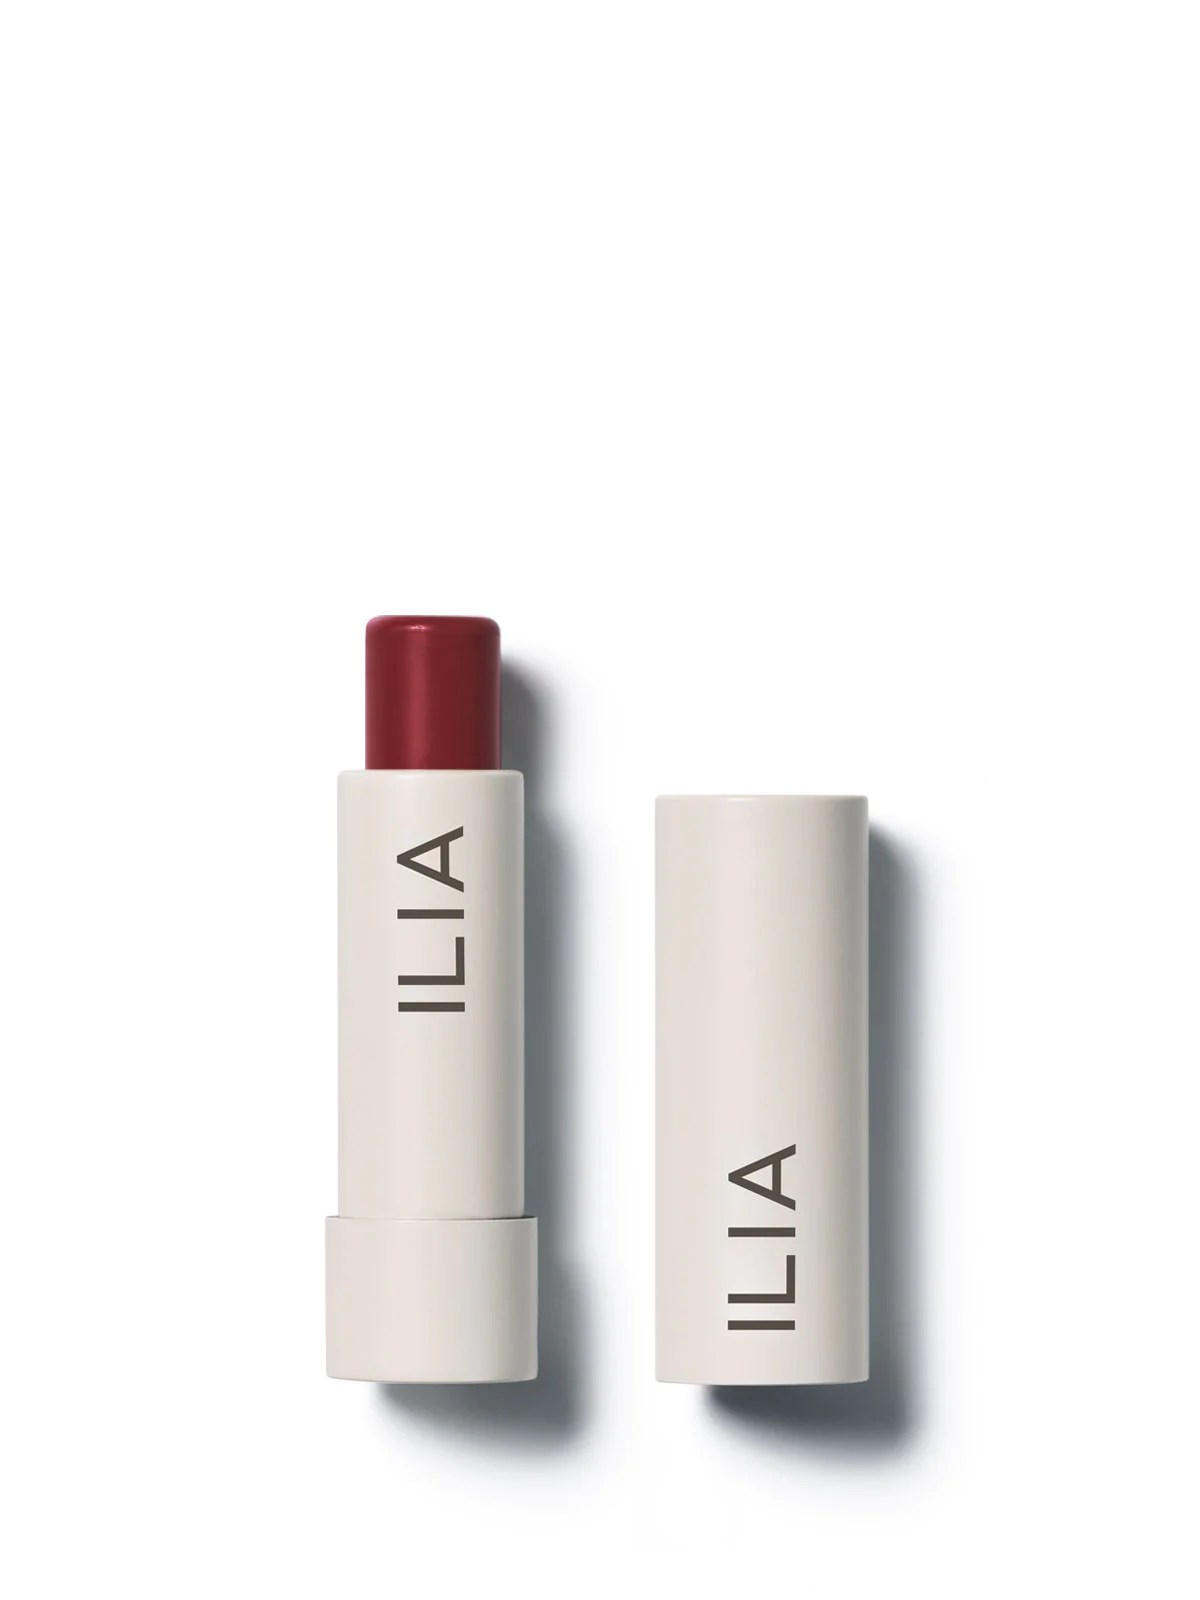 ilia moisturizing oil on white background